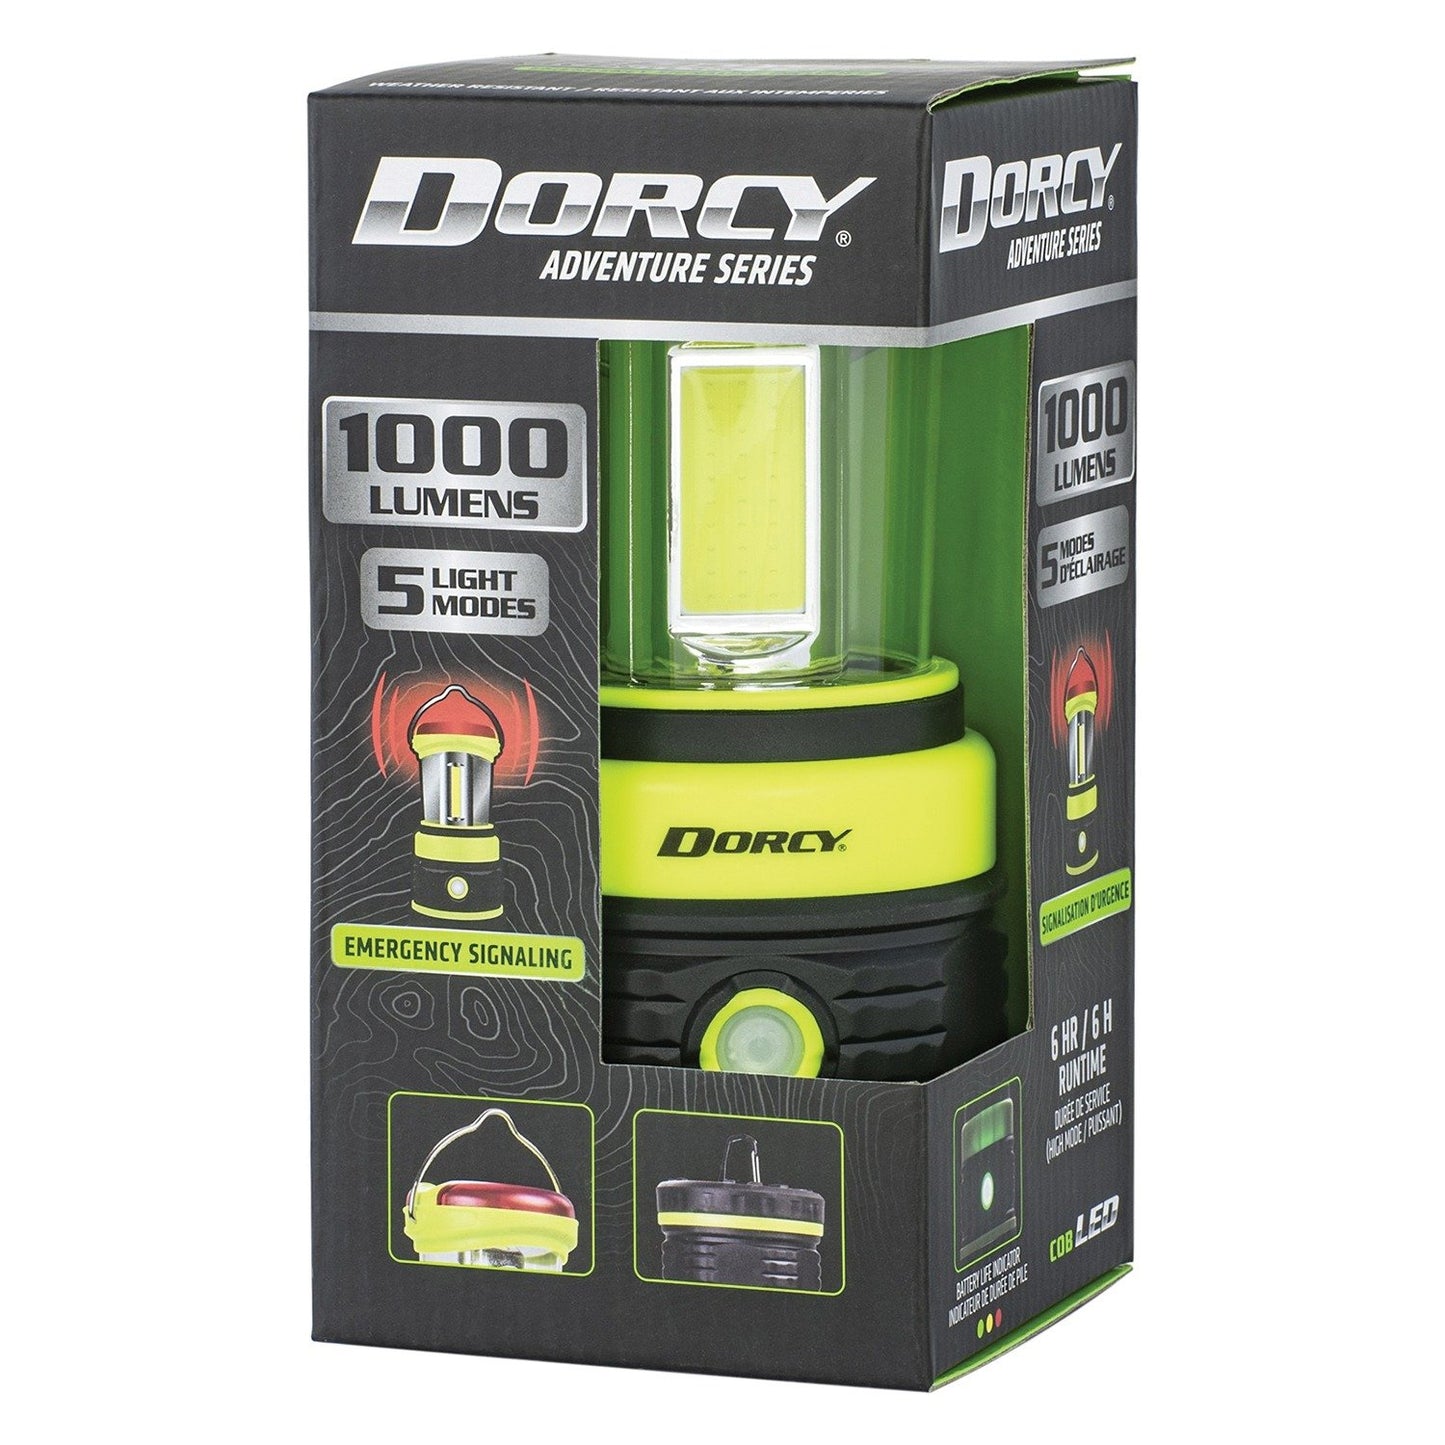 Dorcy 41-3968 1,000-Lumen Adventure Lantern